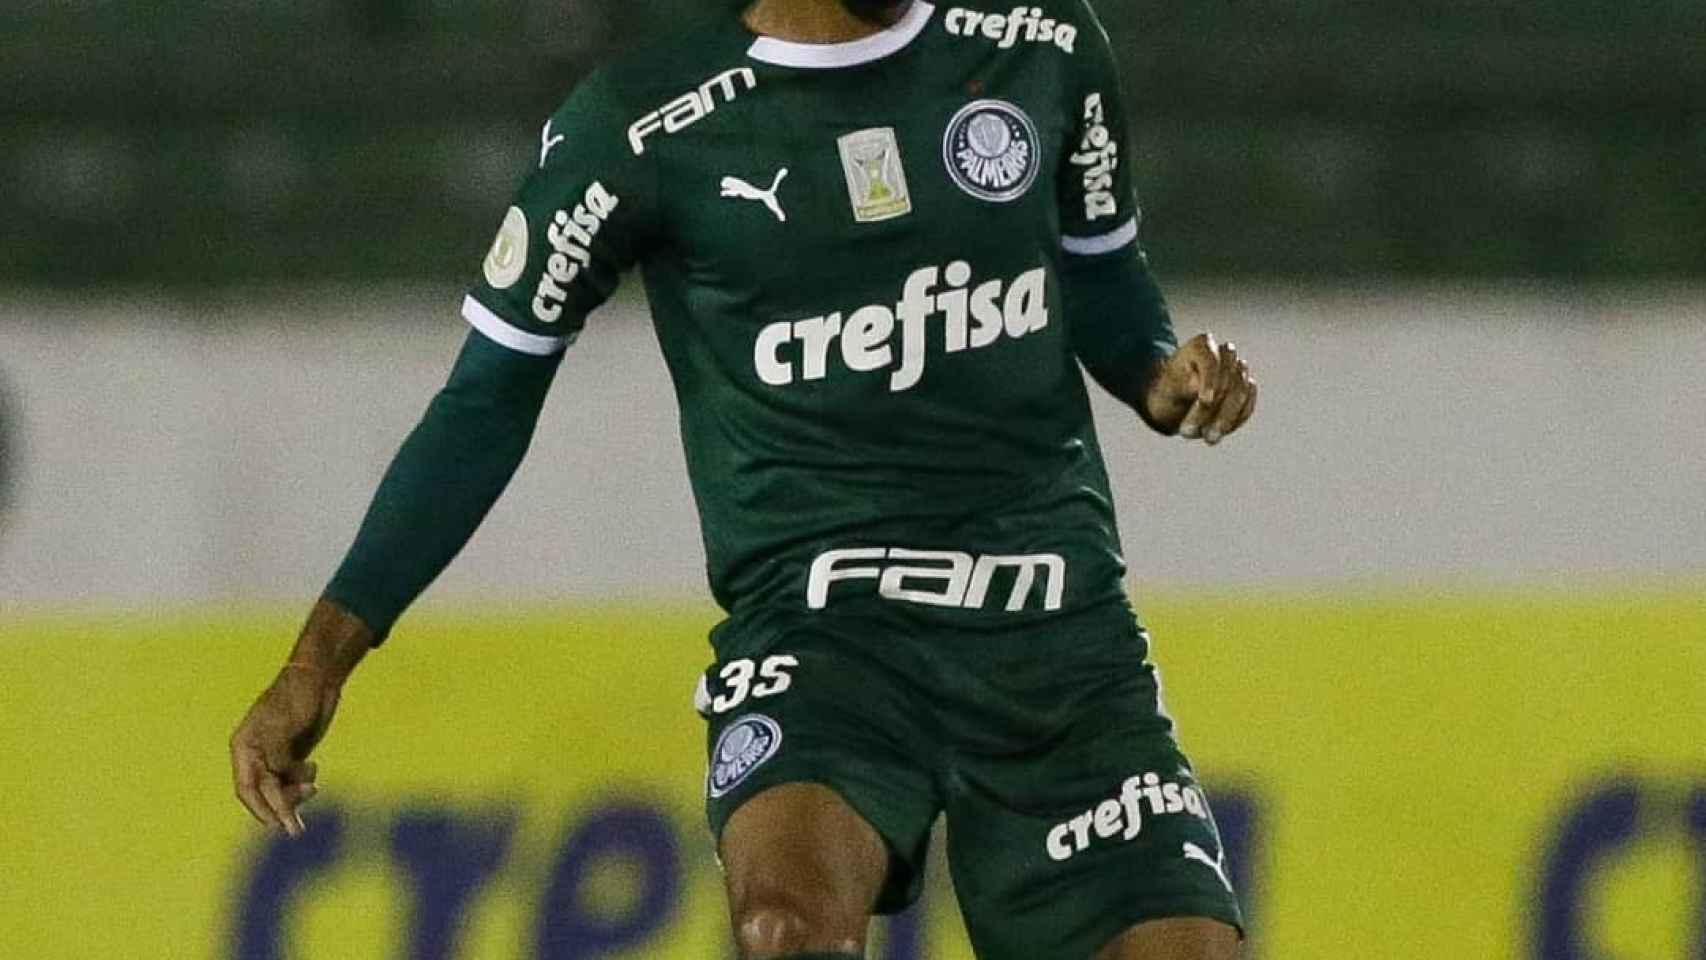 Matheus Fernandes, futbolista del Palmeiras